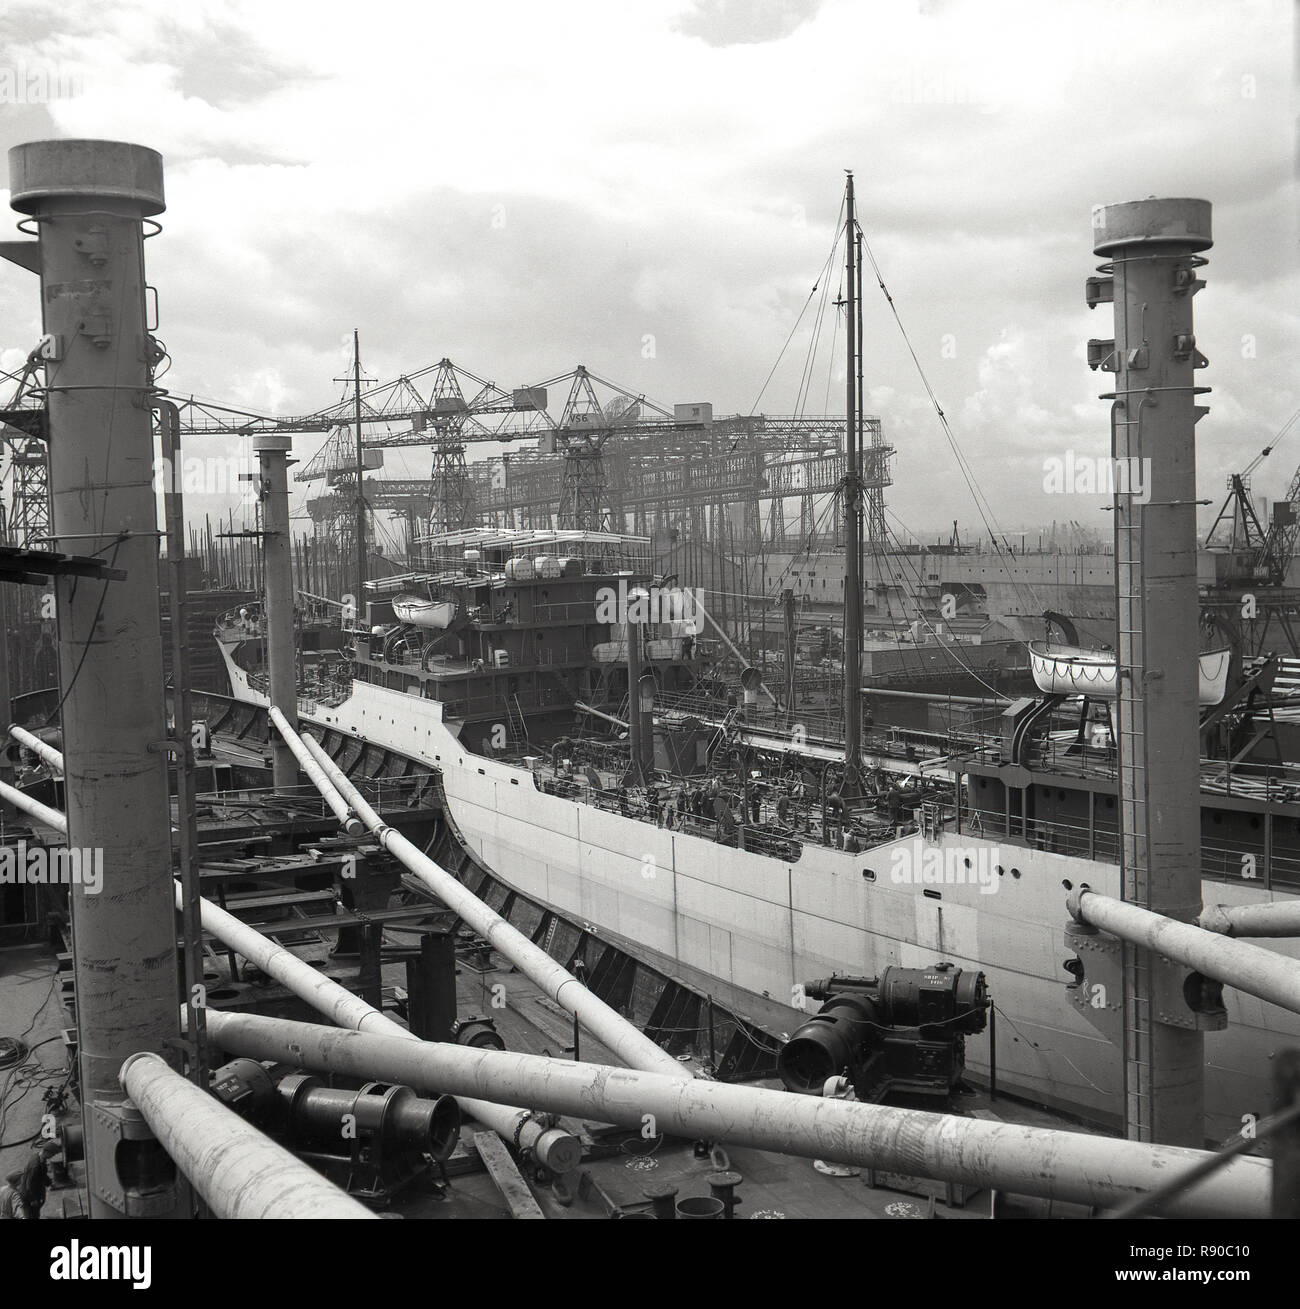 1950, historische Ansicht der Werften Harland & Wolff, Belfast, und in der Ferne, die Werft, wo die Titanic, die berühmten weißen Star Ocean Liner gebaut wurde. Stockfoto